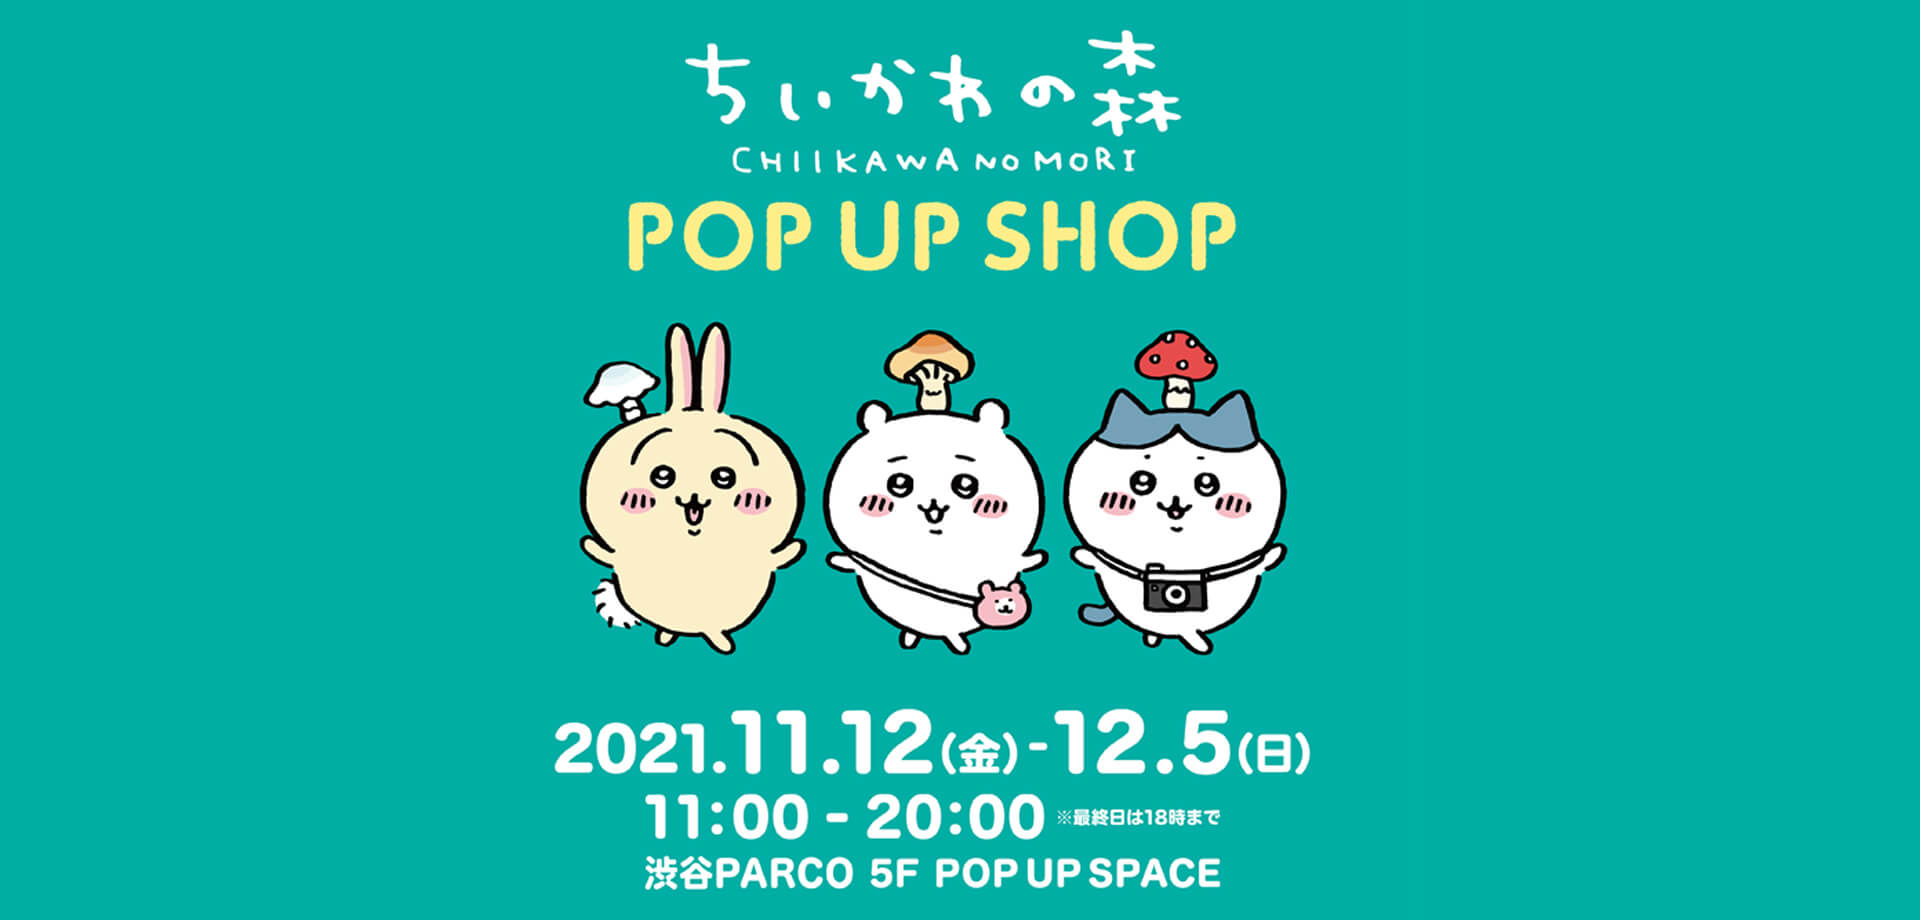 『ちいかわの森 POP UP SHOP』渋谷PARCO